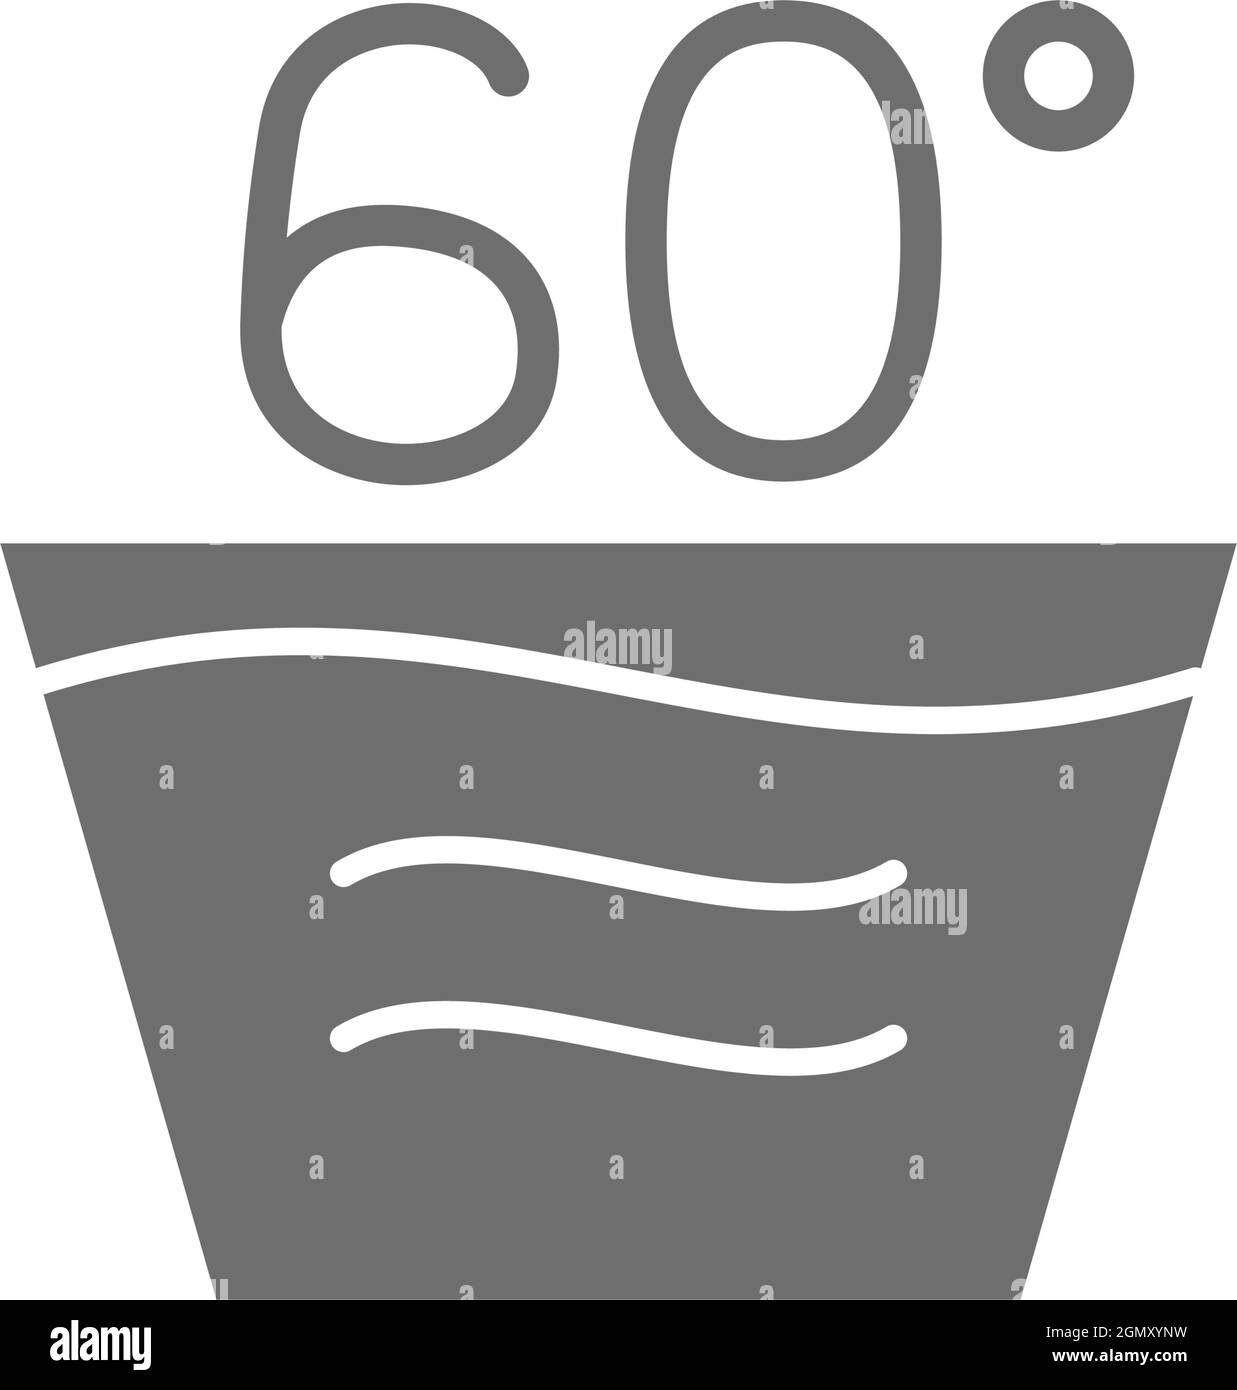 Heiße Wäsche, graues Symbol für 60 Grad Waschtemperatur Stock-Vektorgrafik  - Alamy